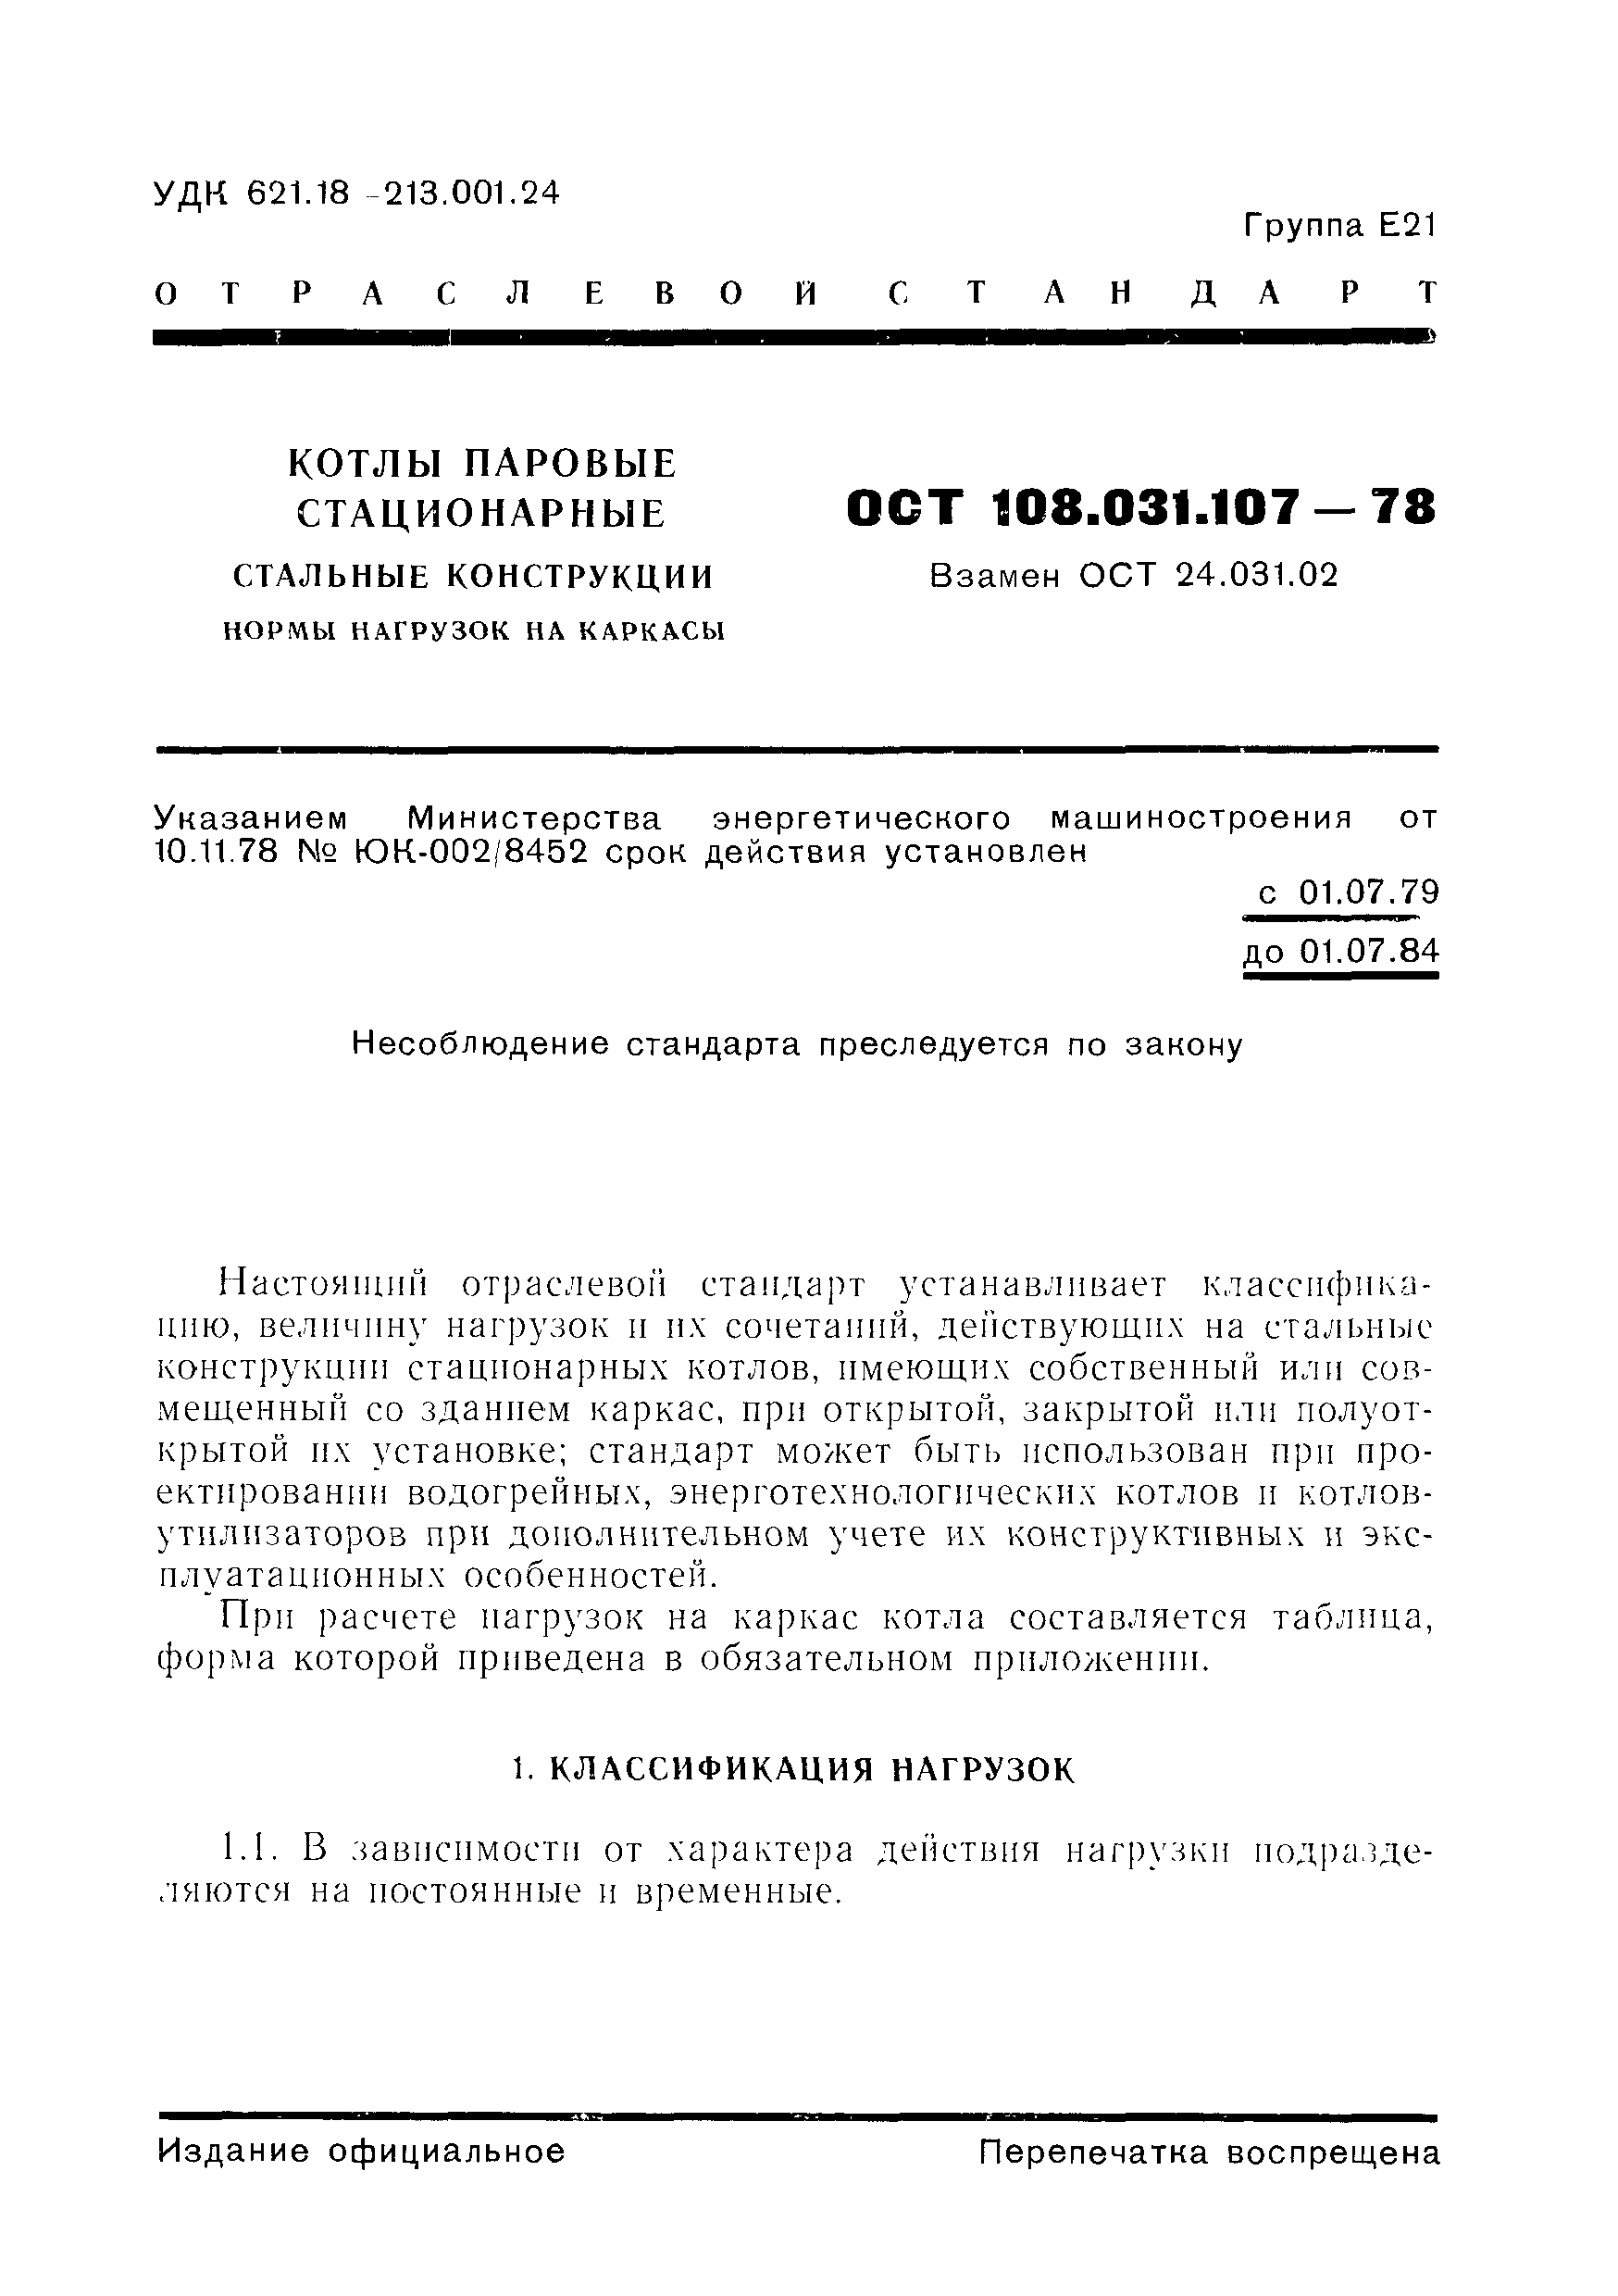 ОСТ 108.031.107-78